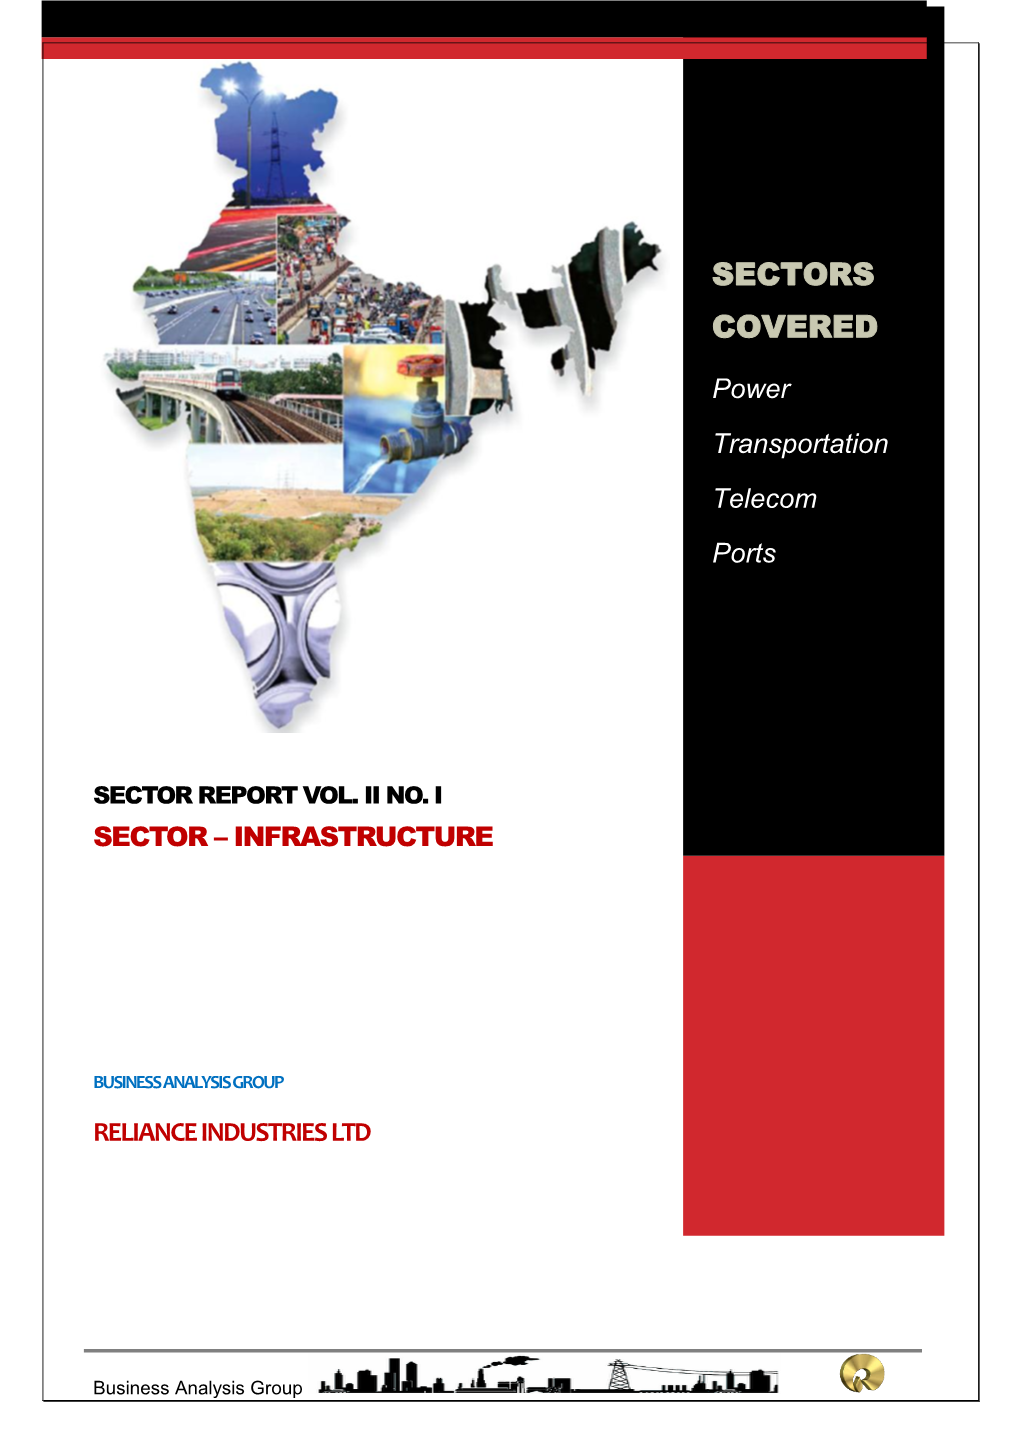 Infrastructure Report Vol.II No.I